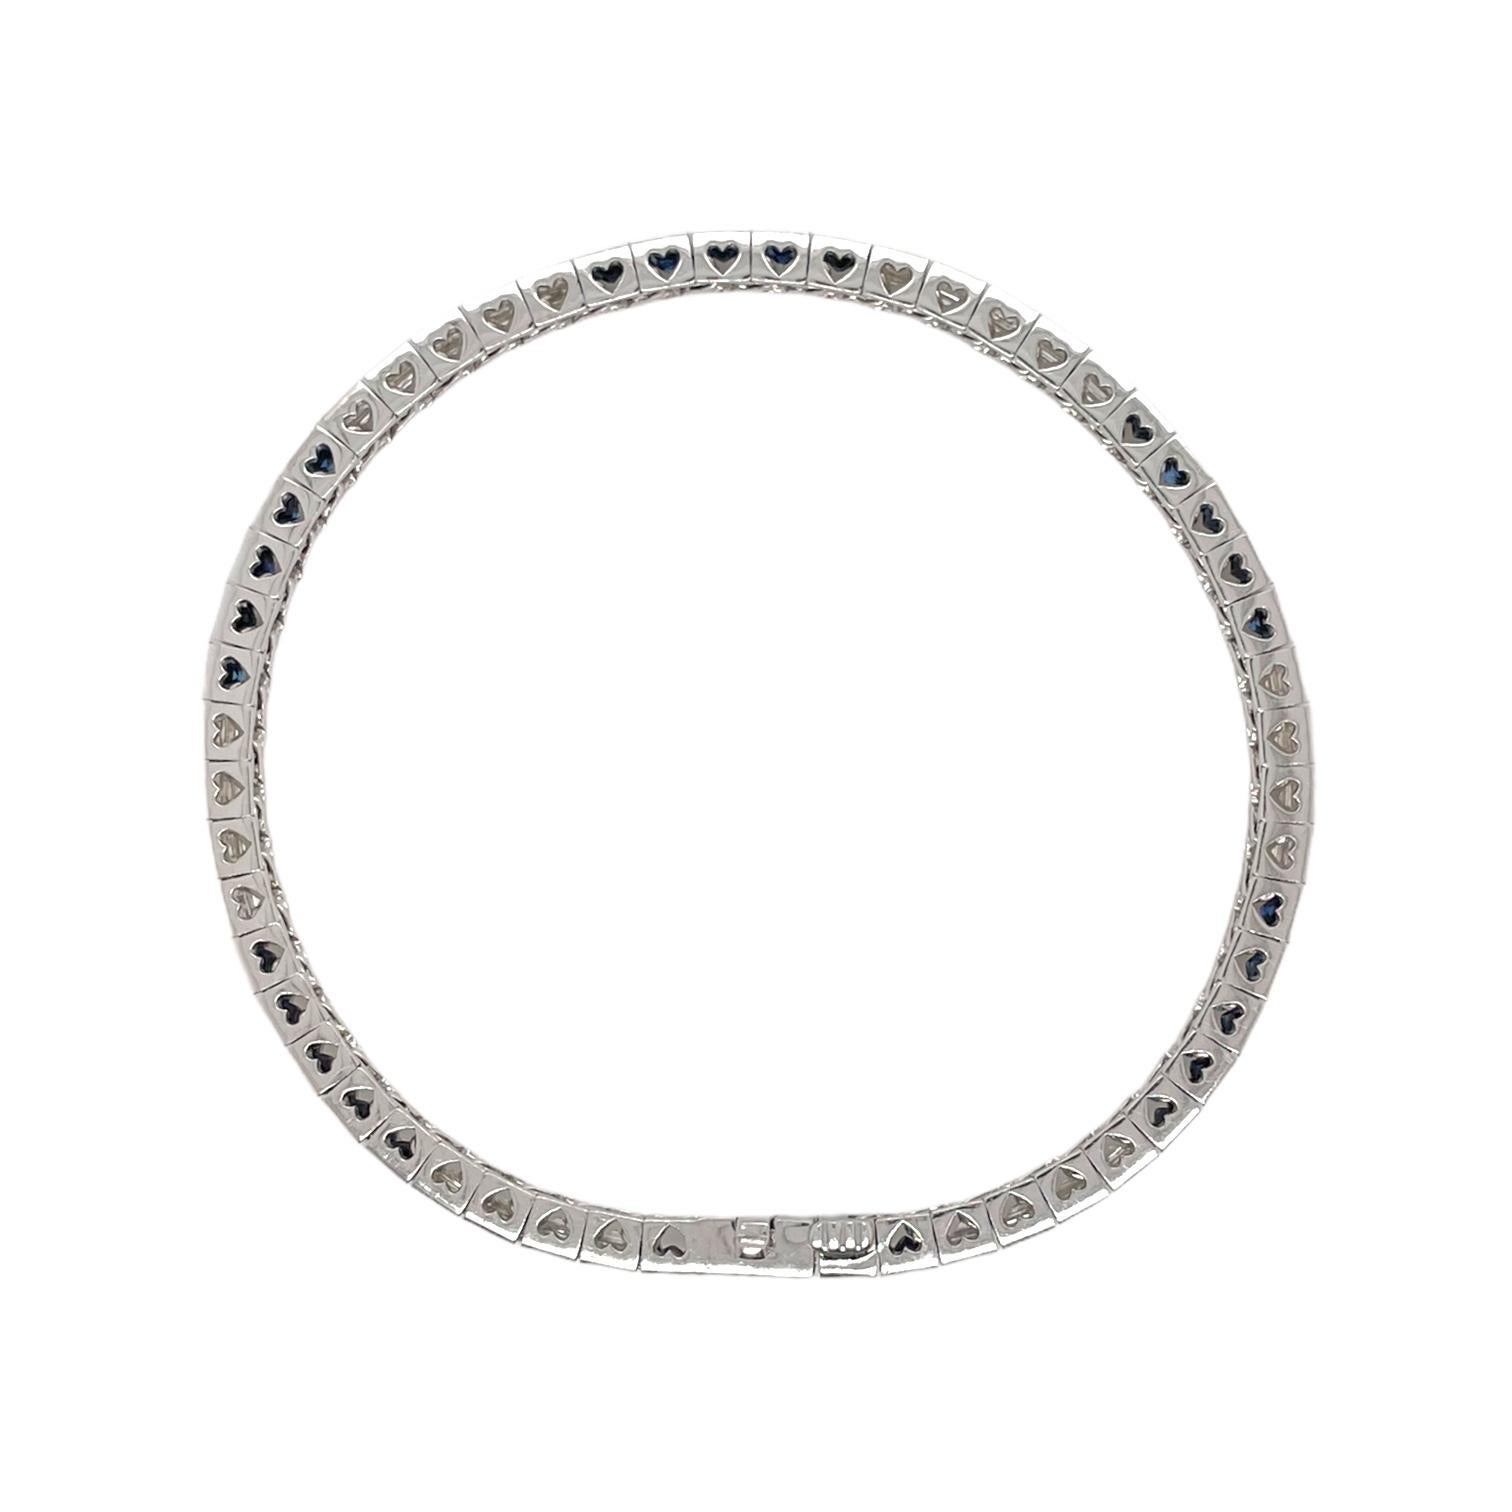 Zeitloses, quadratisches Armband aus 18 Karat Weißgold mit Saphiren und Diamanten im Smaragdschliff. Das Armband enthält 30 blaue Saphire im Quadratschliff (4,69 tcw) und 26 Diamanten im Smaragdschliff (3,75 tcw). Die Diamanten haben eine Farbe von